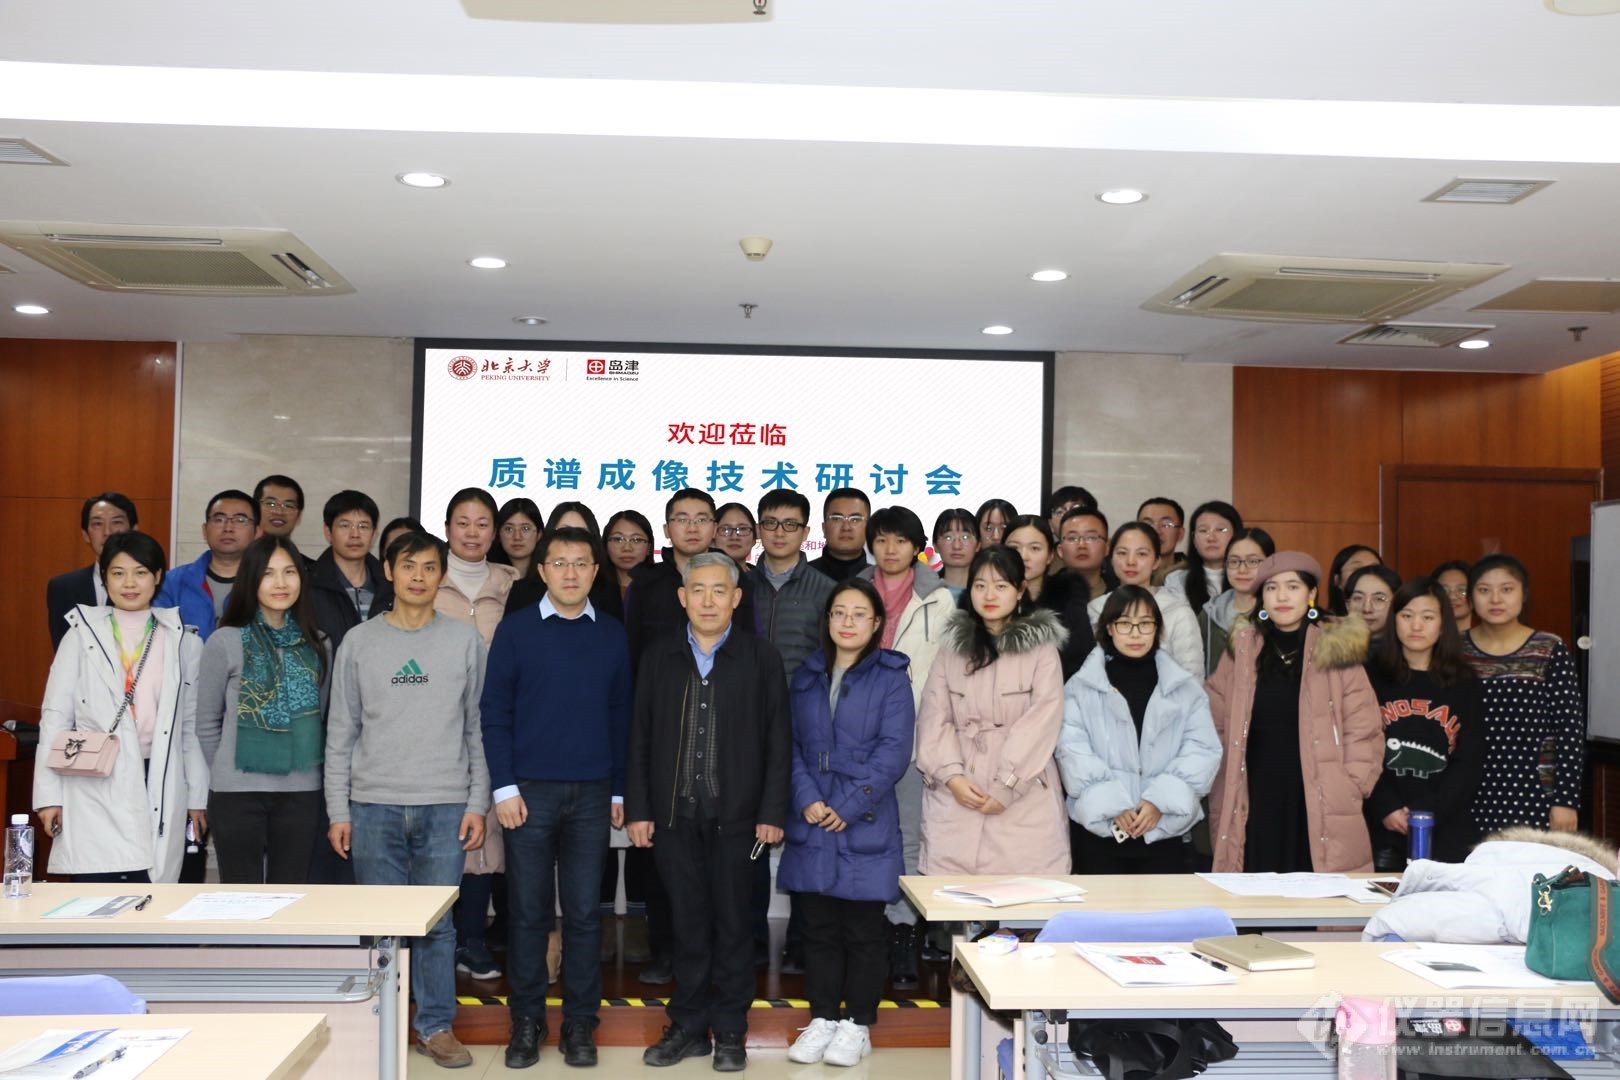 岛津公司与北京大学联合举办“质谱成像技术研讨会”